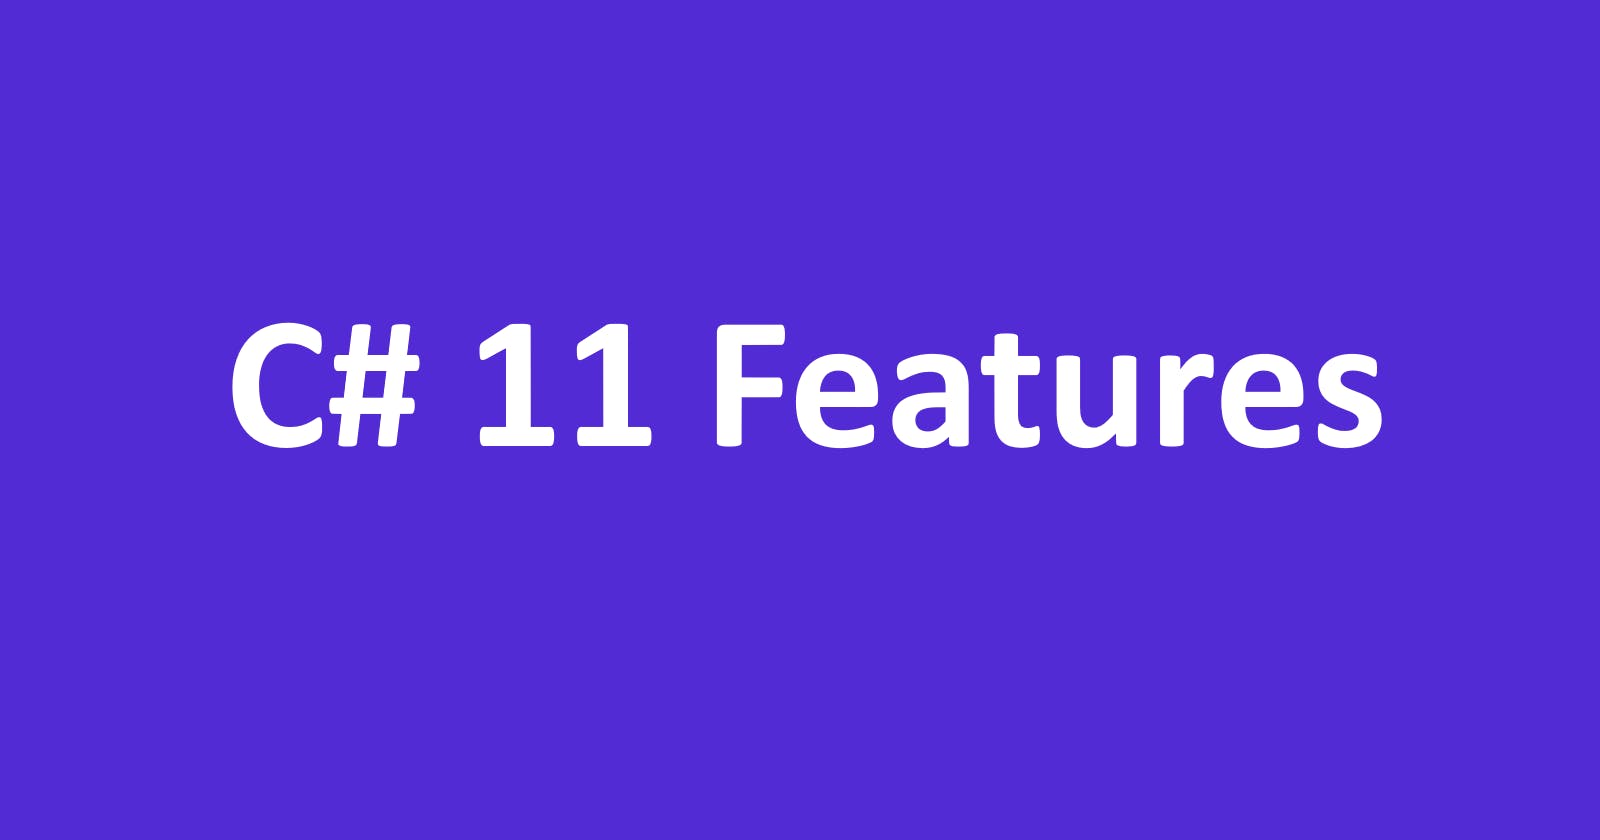 Twelve C# 11 Features